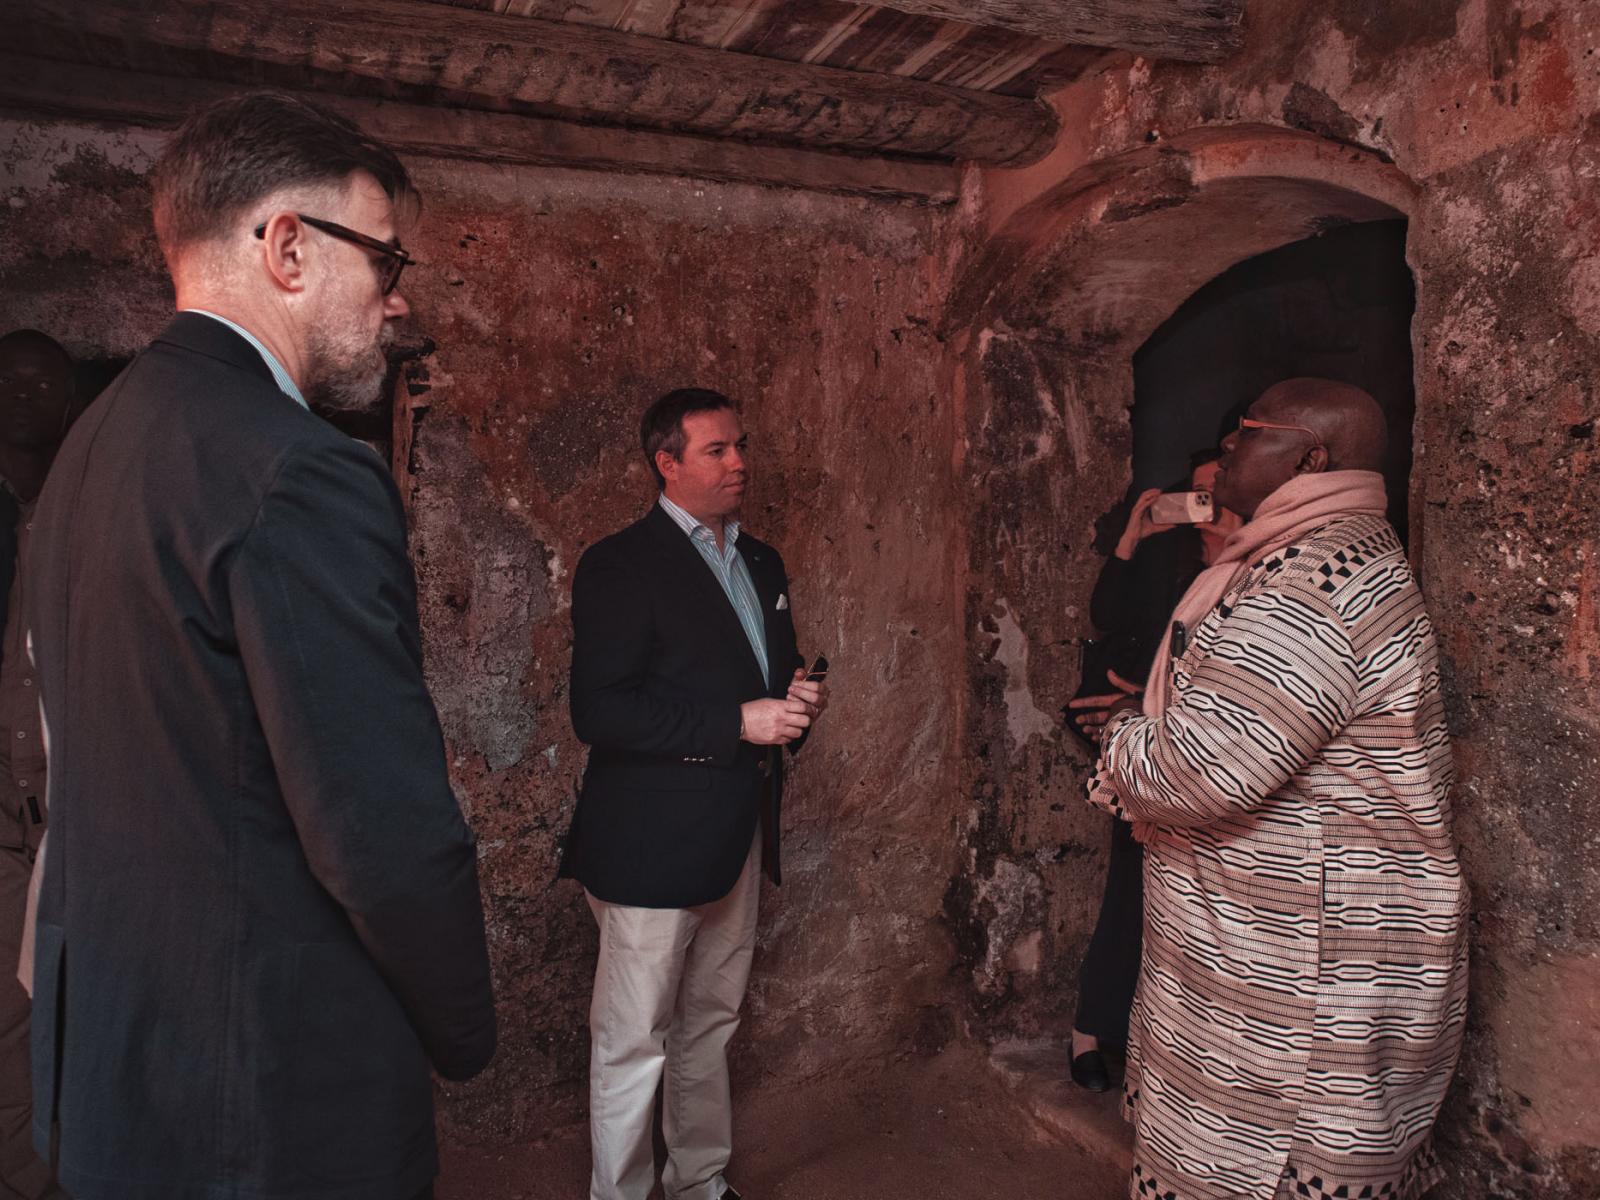 Le Prince et le Ministre reçoivent des explications sur l'île de Gorée